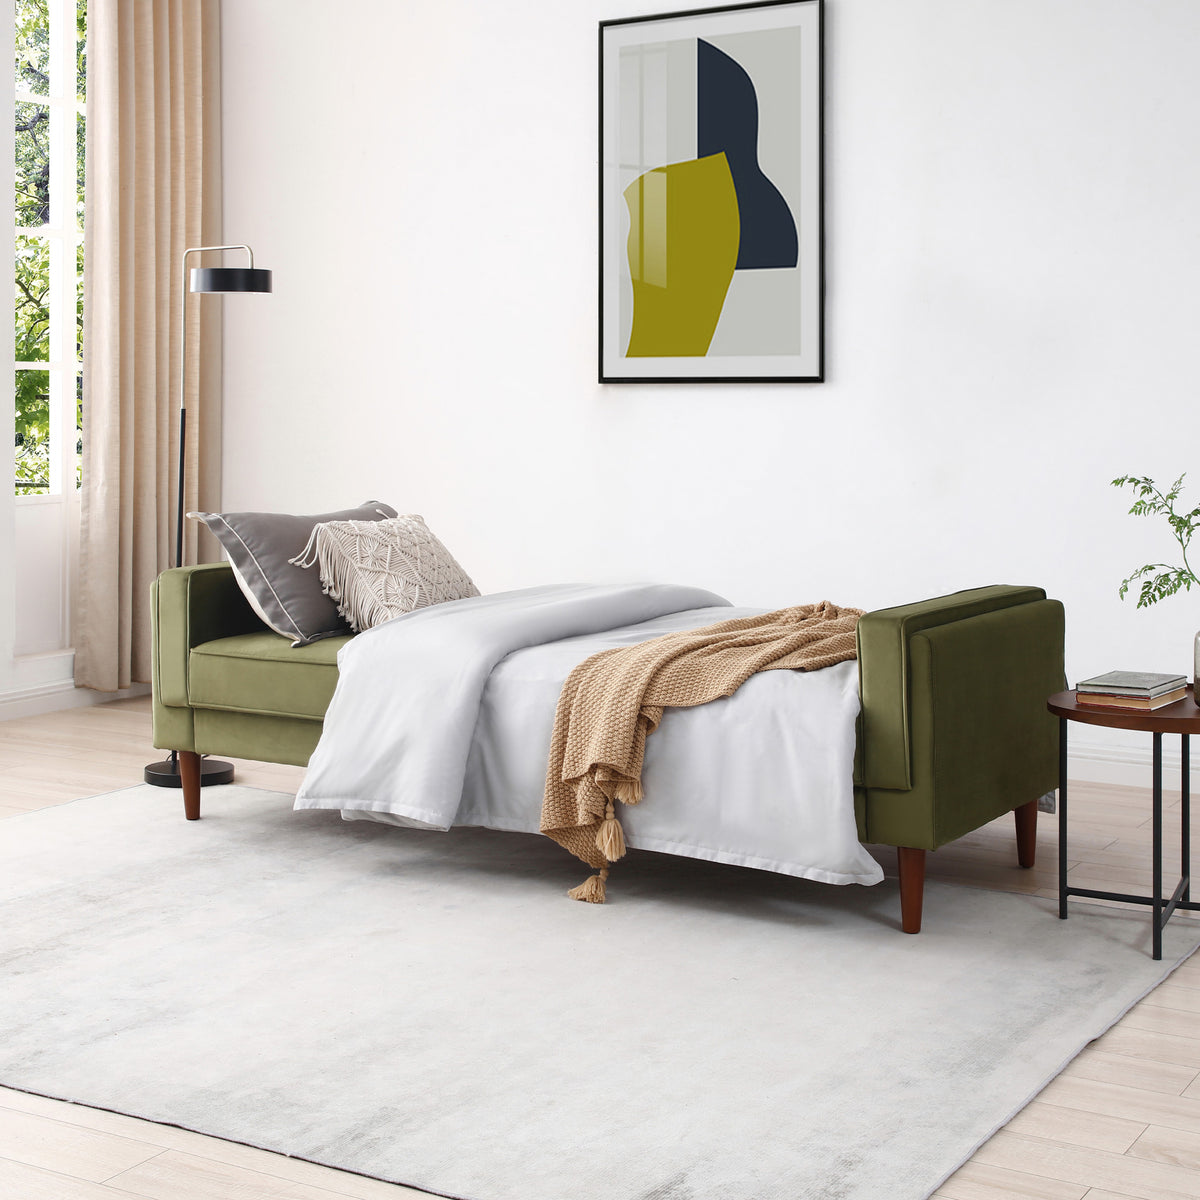 Stroud Olive 3 Seater Velvet Sofabed for living room or bedroom